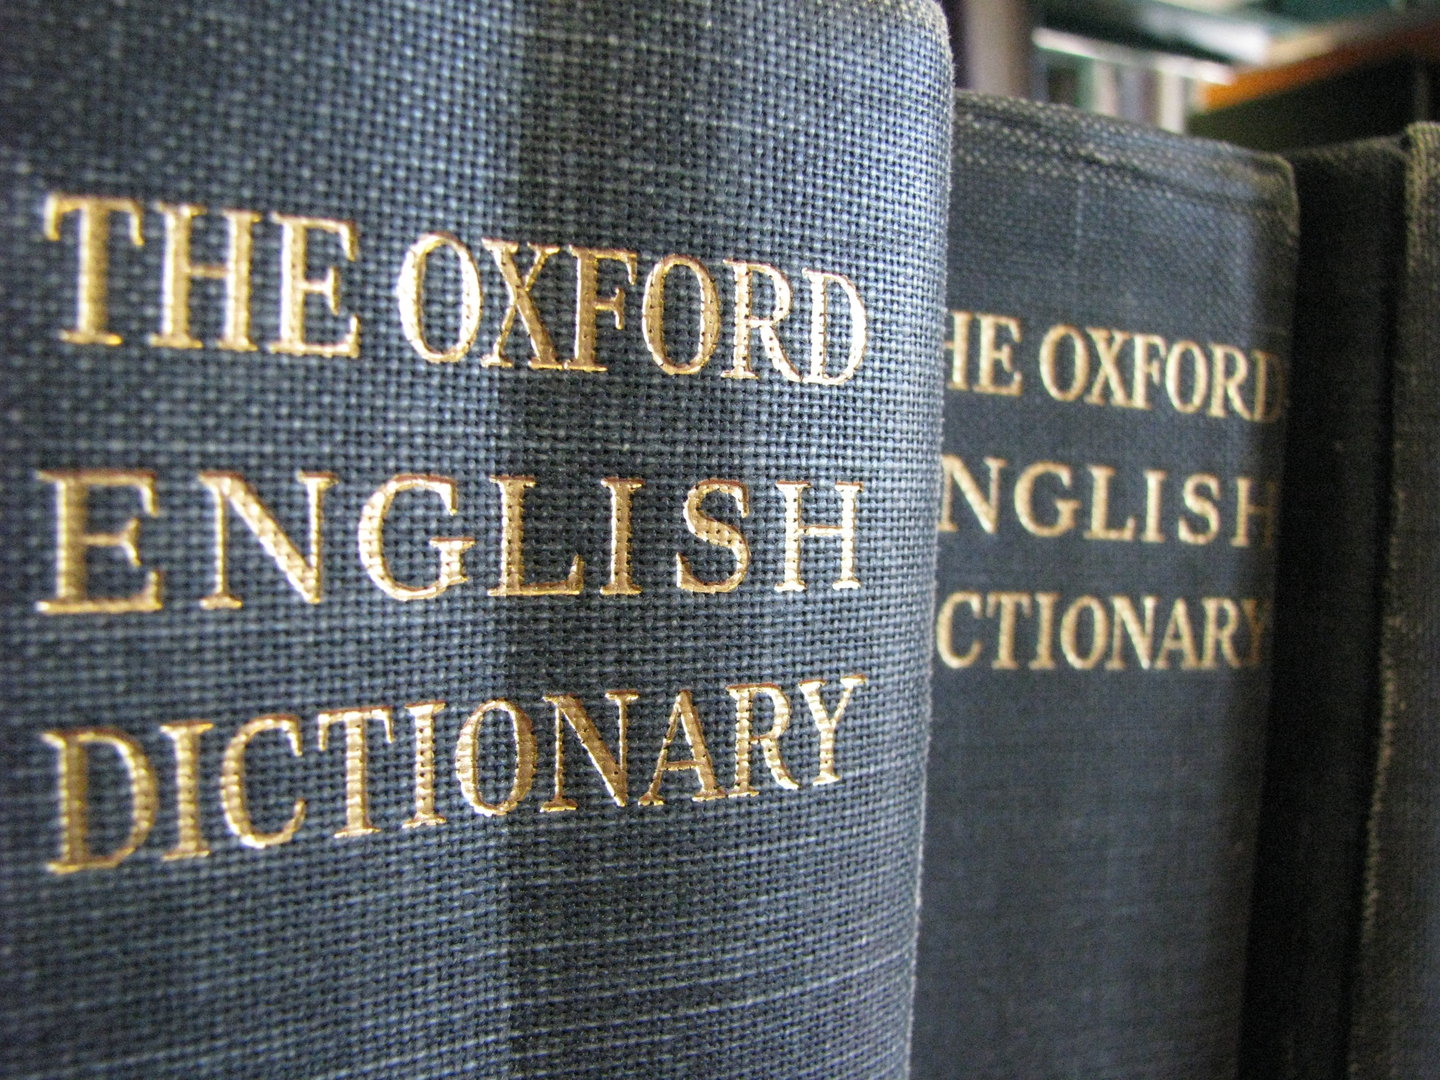 A leghíresebb angol szótár jelentős részét egy őrült írta